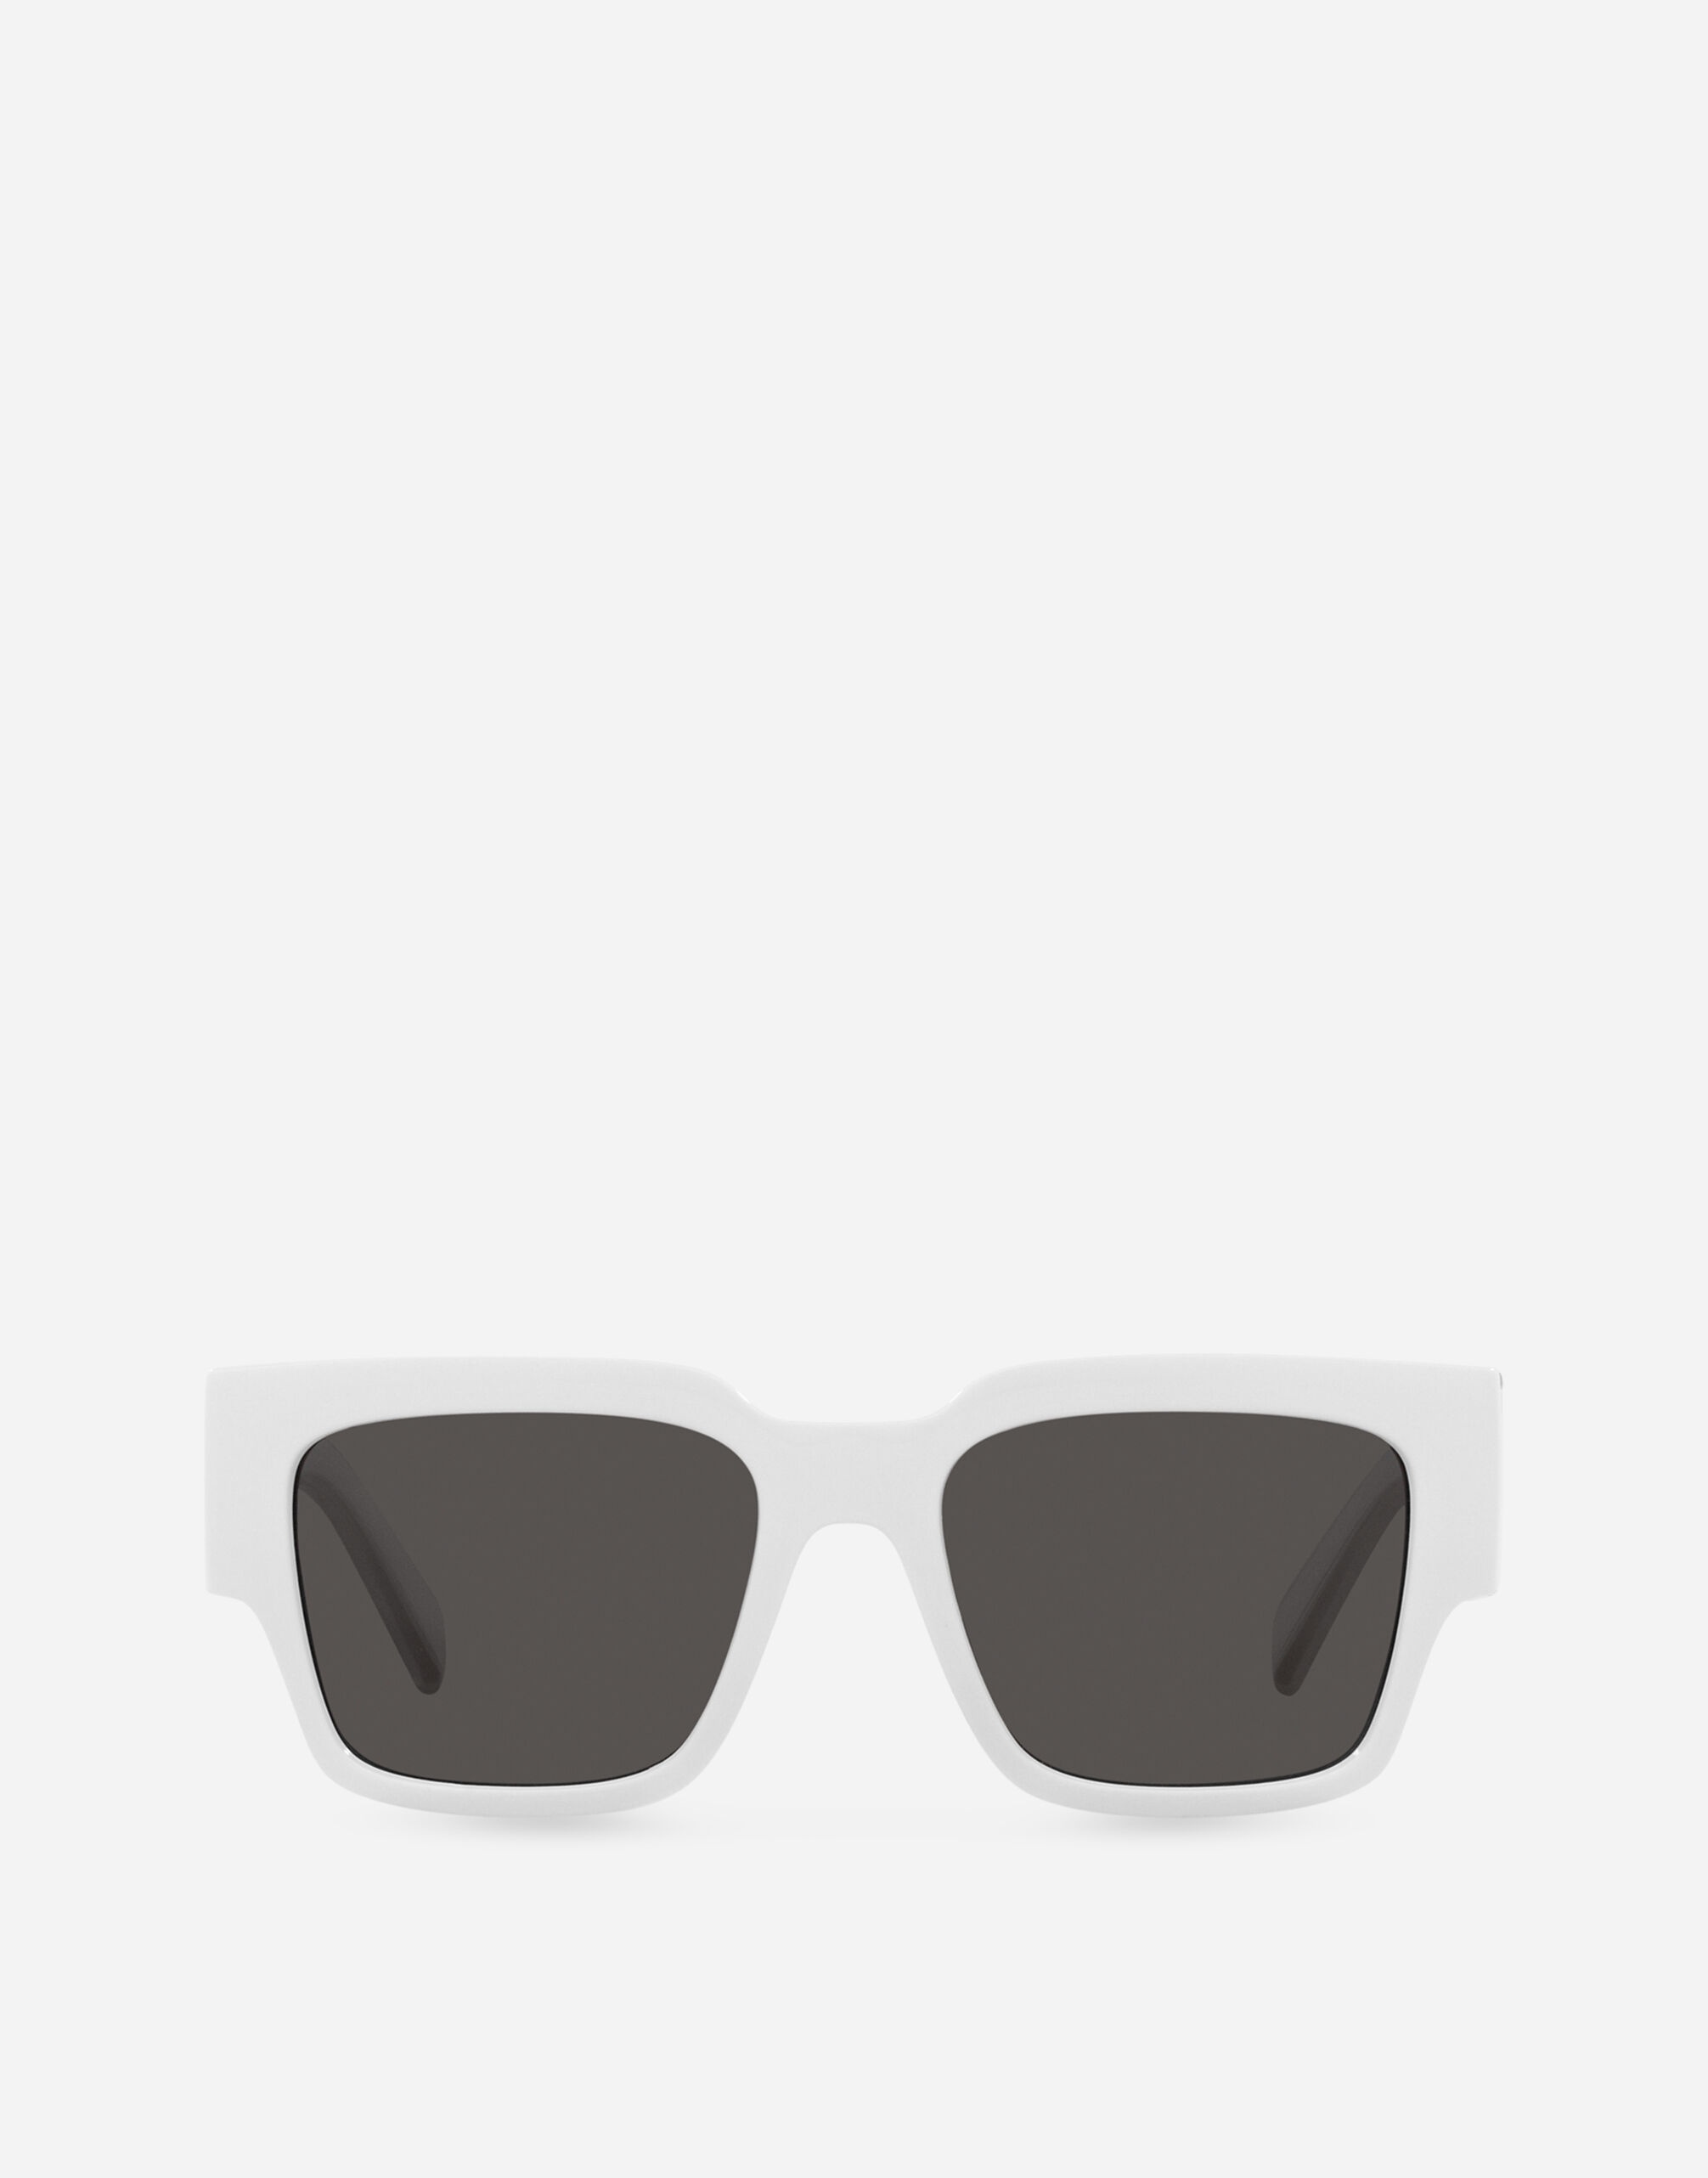 DG Elastic Sunglasses - 1